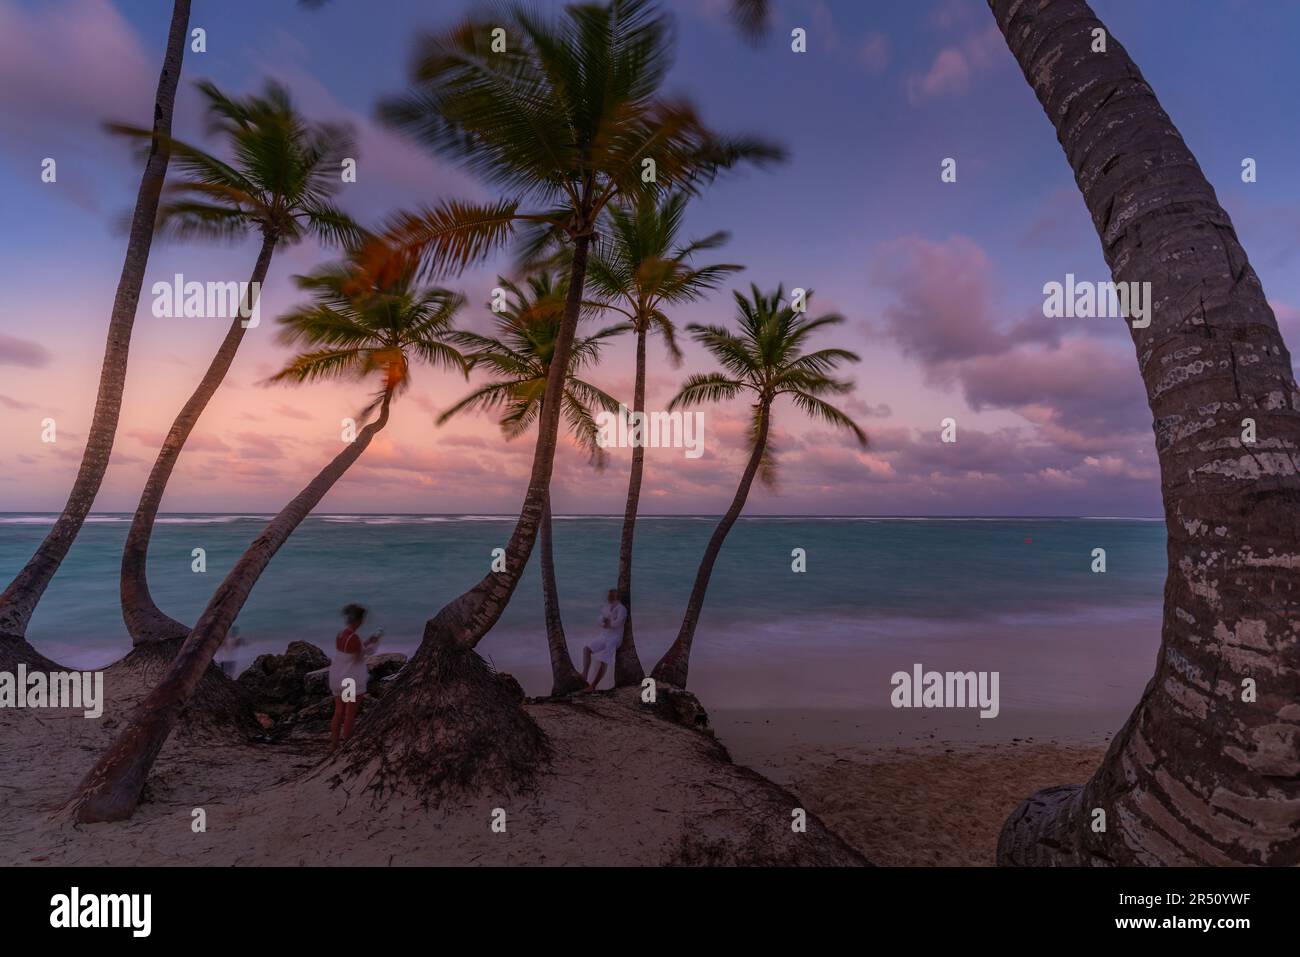 Vue sur les palmiers de la plage de Bavaro au coucher du soleil, Punta Cana, République dominicaine, Antilles, Caraïbes, Amérique centrale Banque D'Images